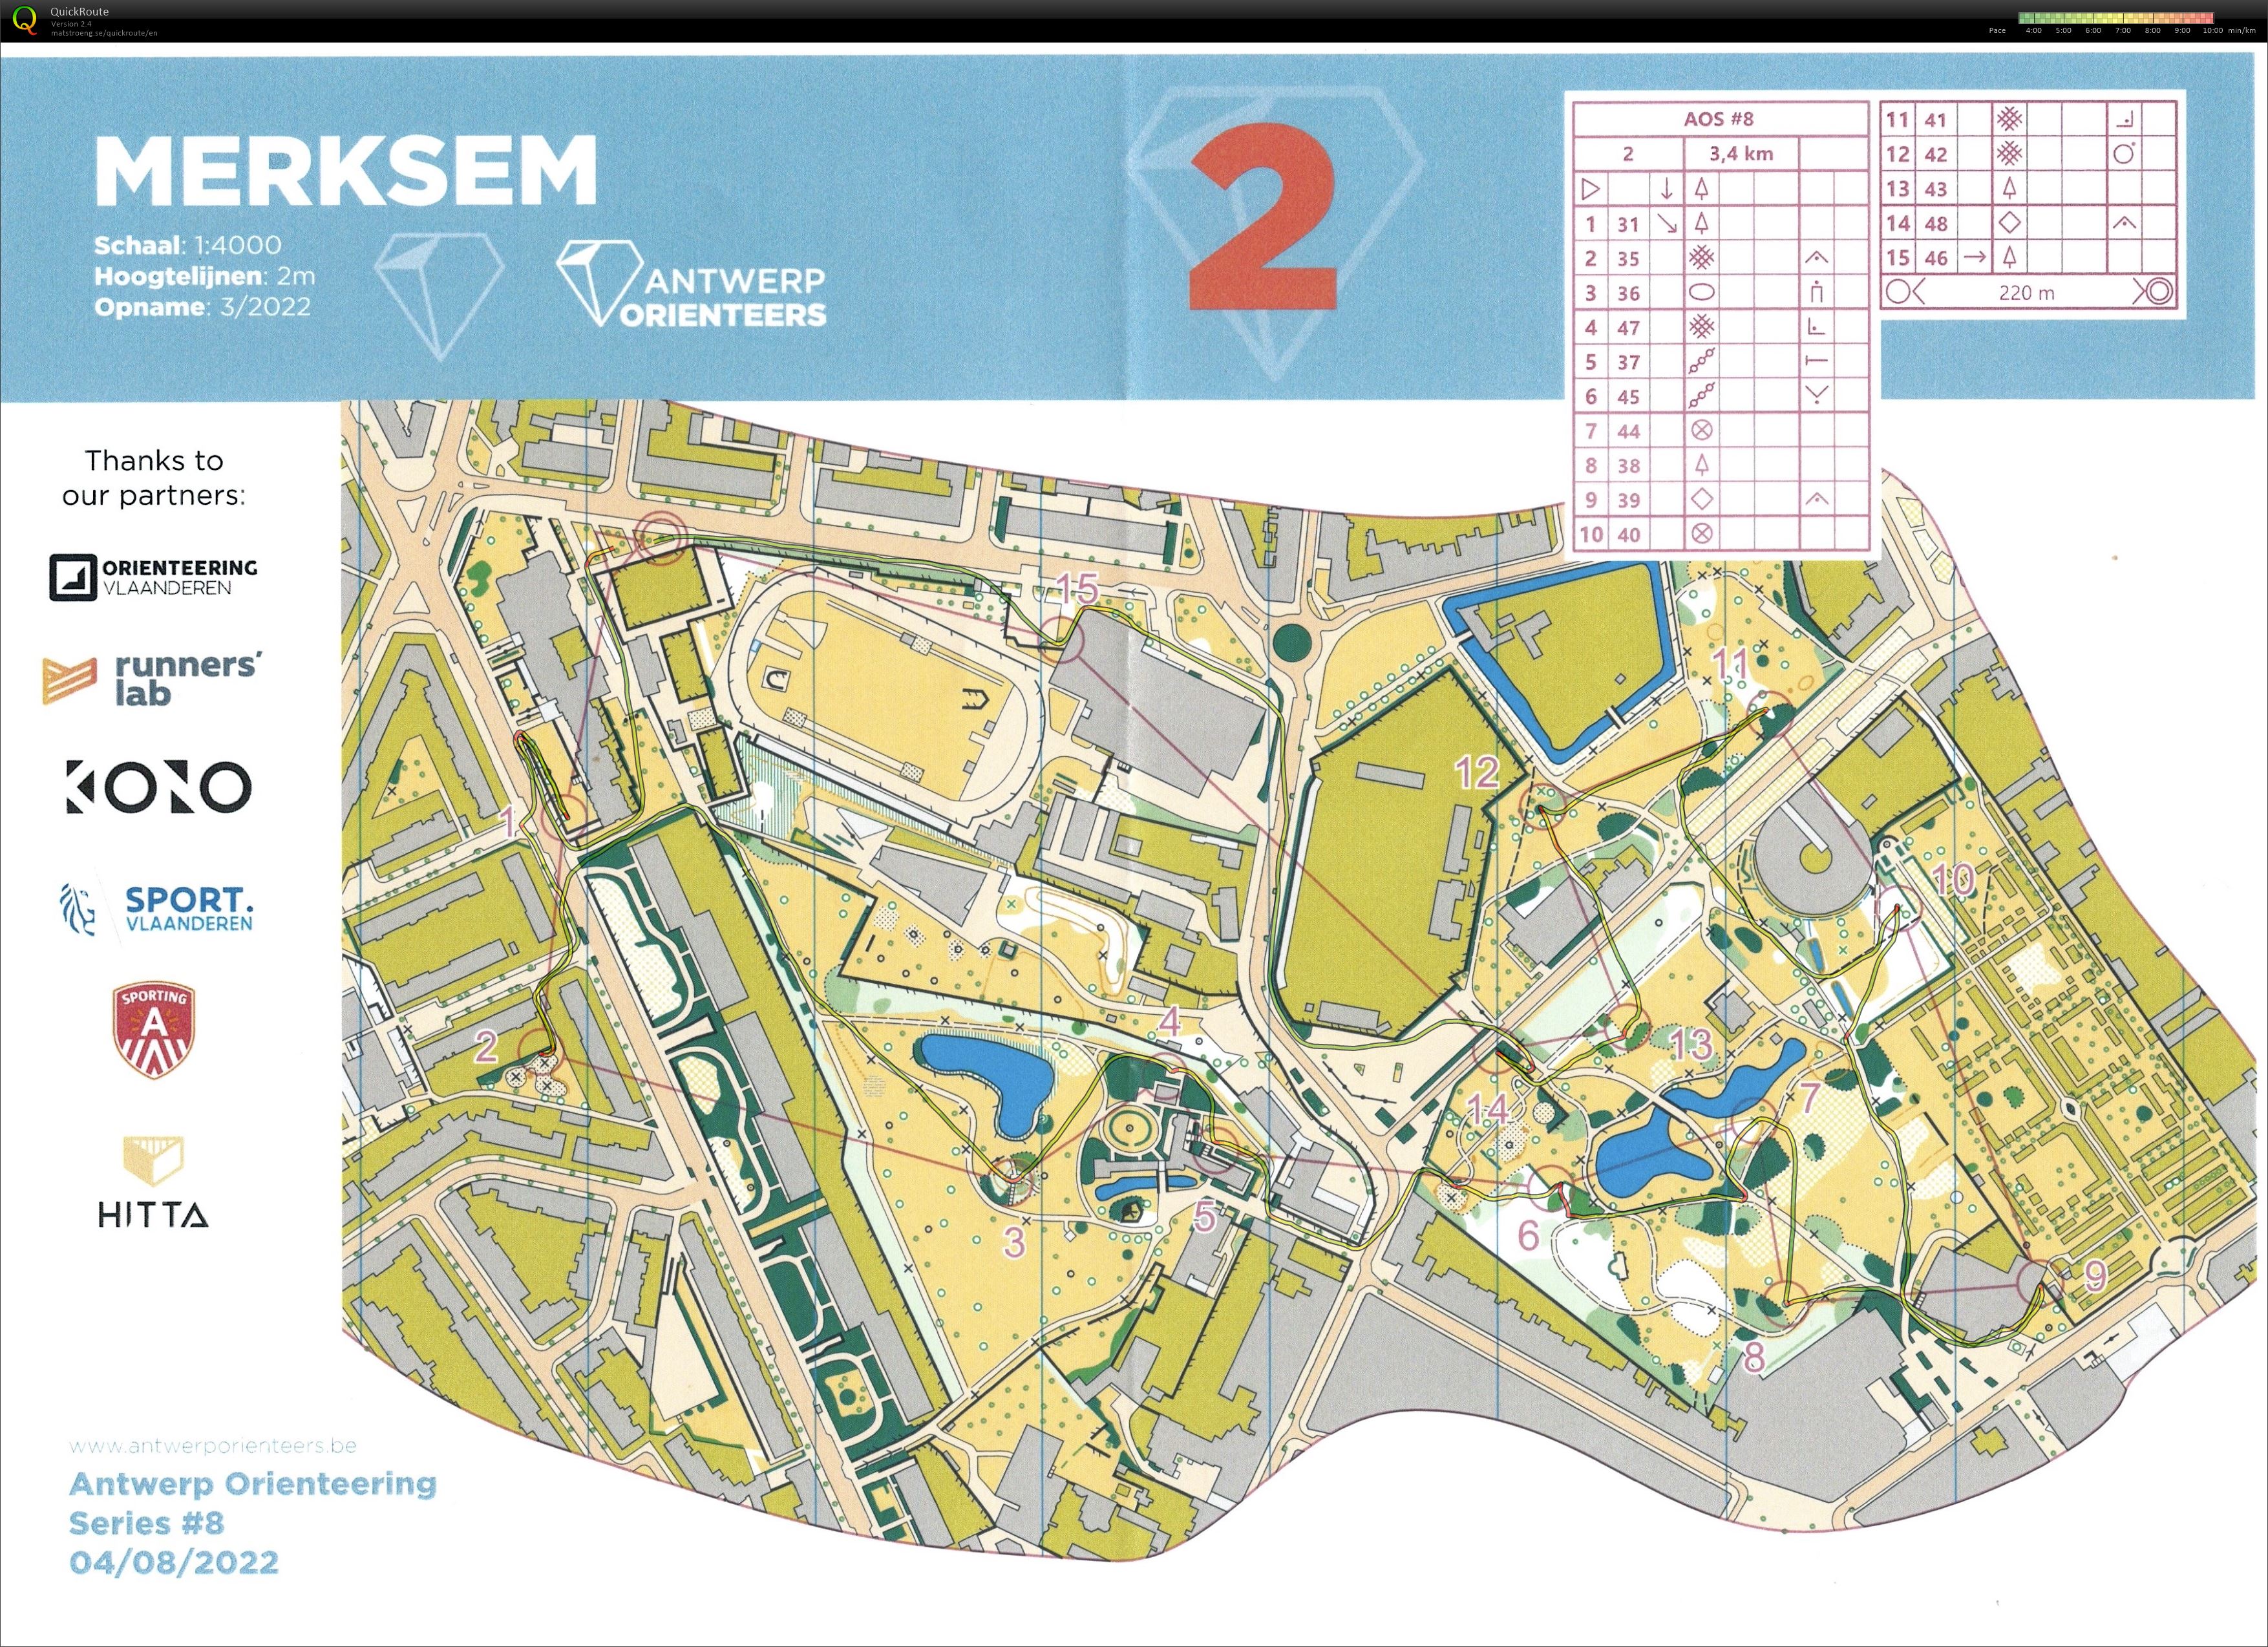 Antwerp Orienteering Series - Merksem - 2 (04/08/2022)